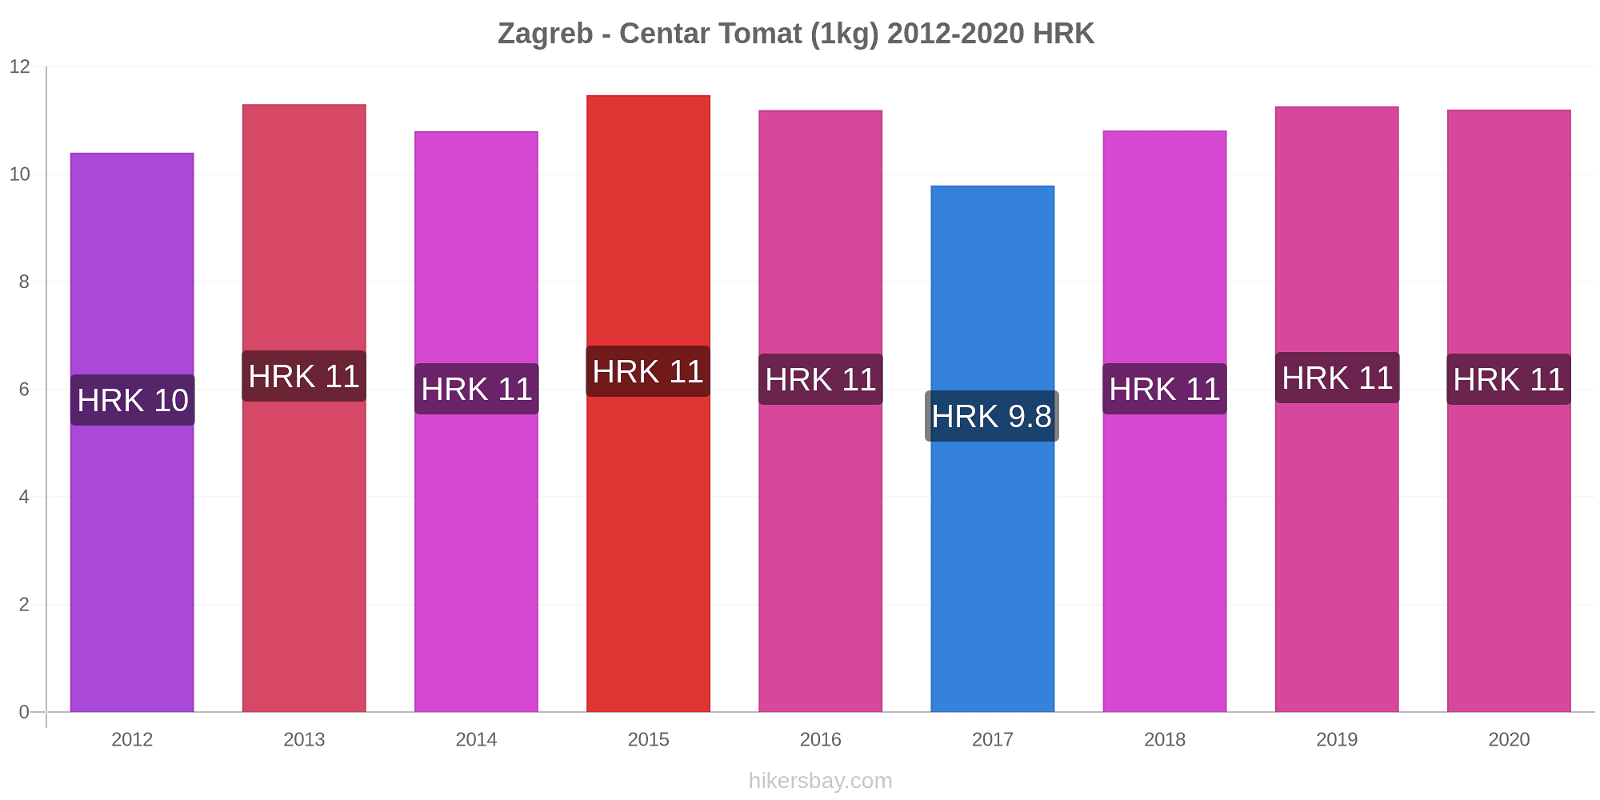 Zagreb - Centar prisendringer Tomat (1kg) hikersbay.com